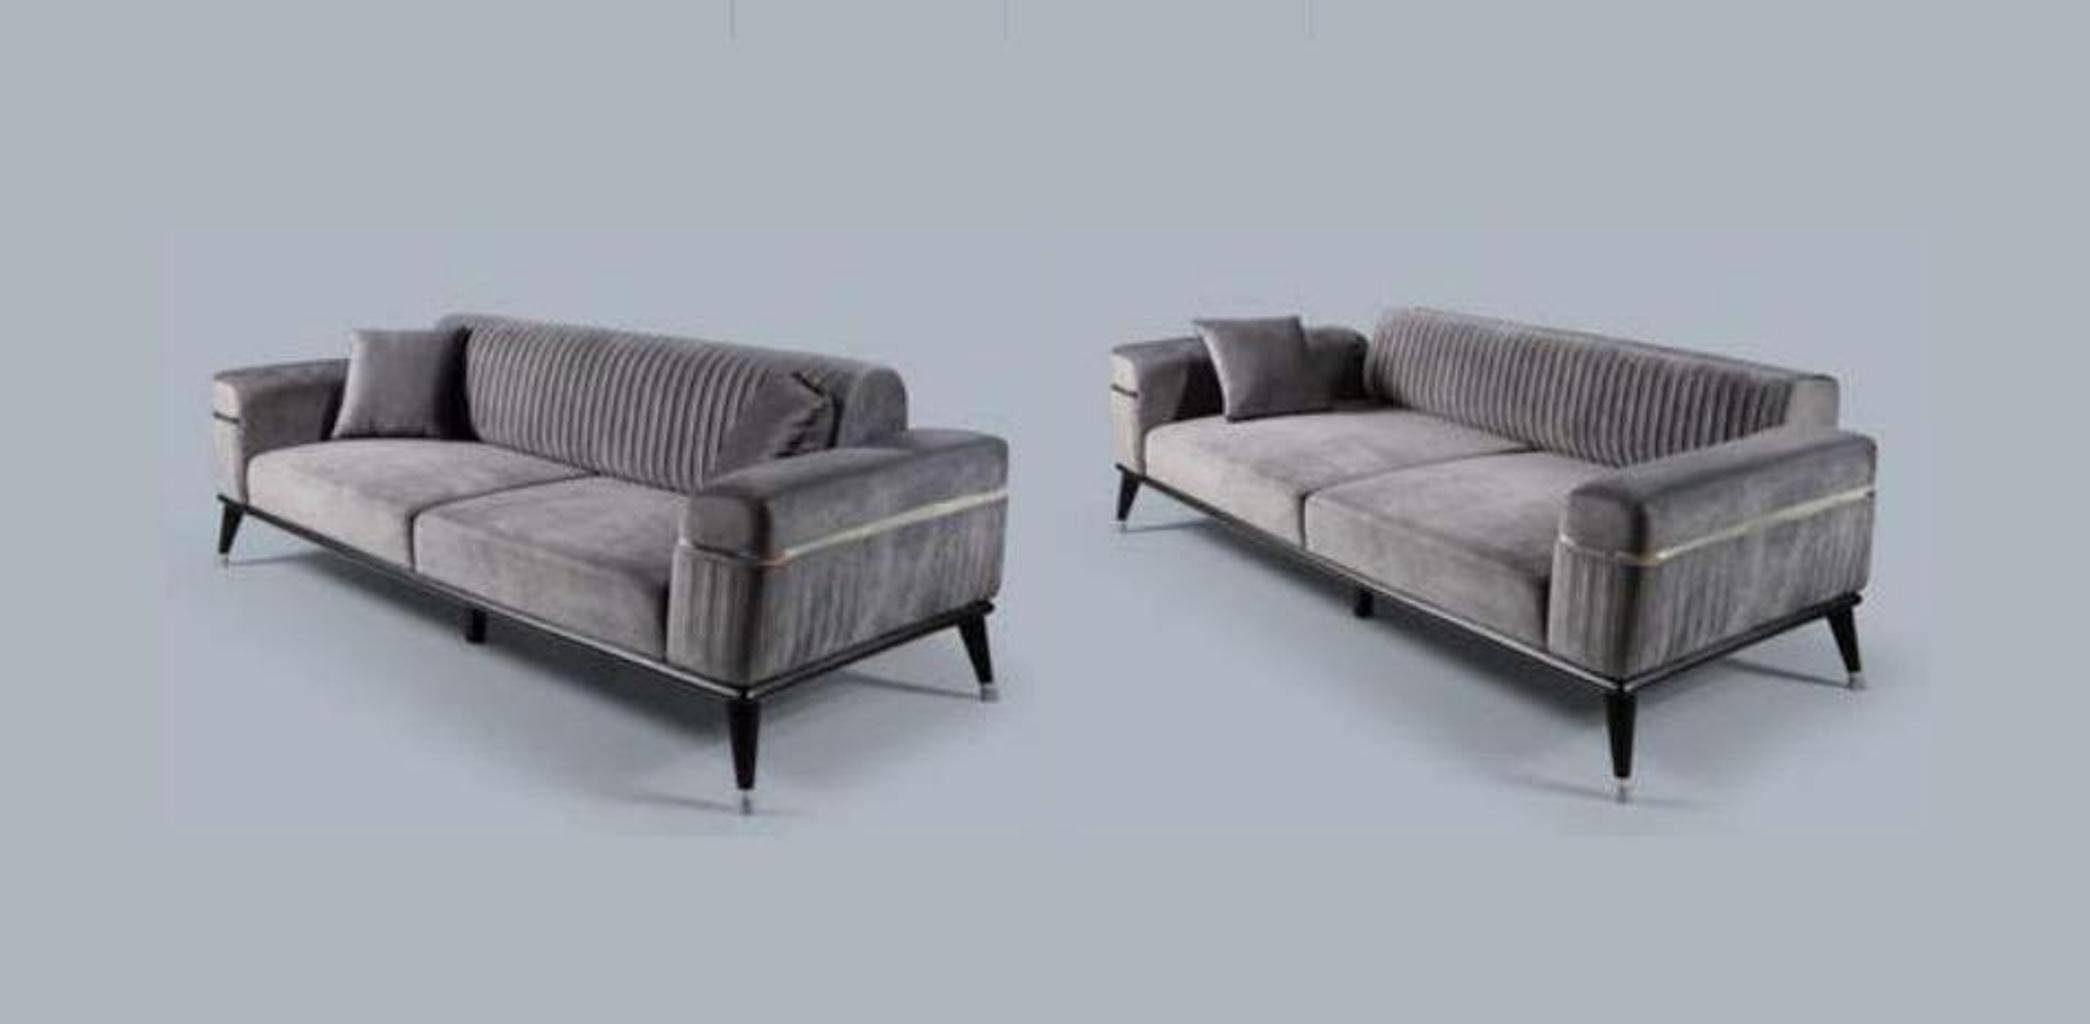 Made Couchen Grau, JVmoebel in Wohnzimmer Sofa Europe Sofa Graue Couch Möbel Luxus